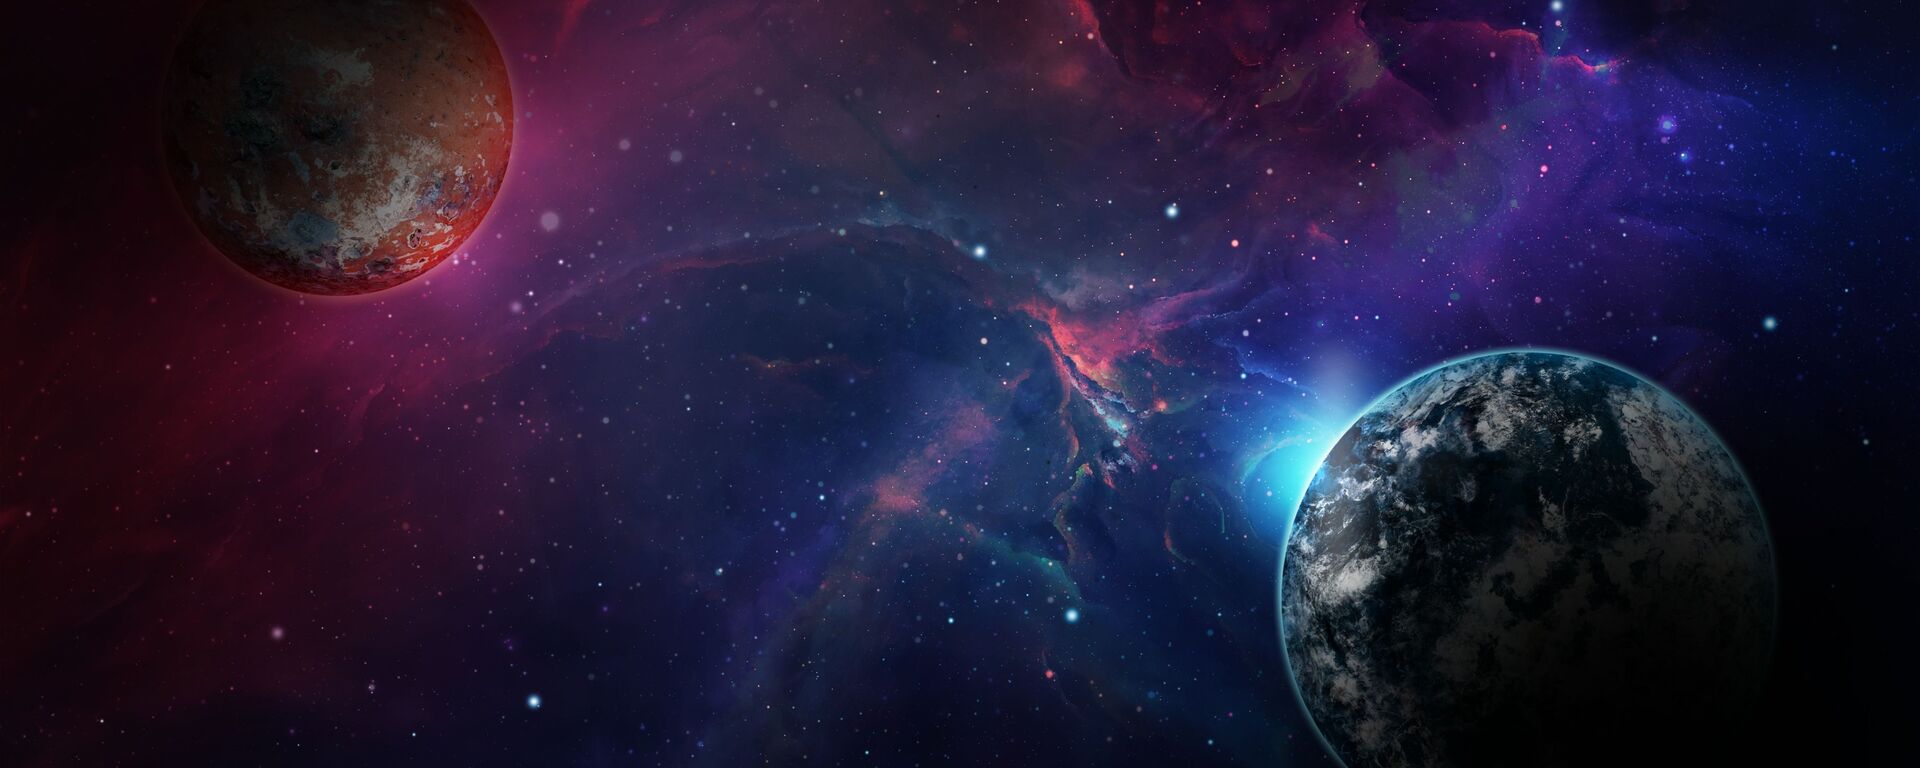 صورة خيالية لكوكب الأرض بجانب كوكب آخر  - سبوتنيك عربي, 1920, 28.11.2021